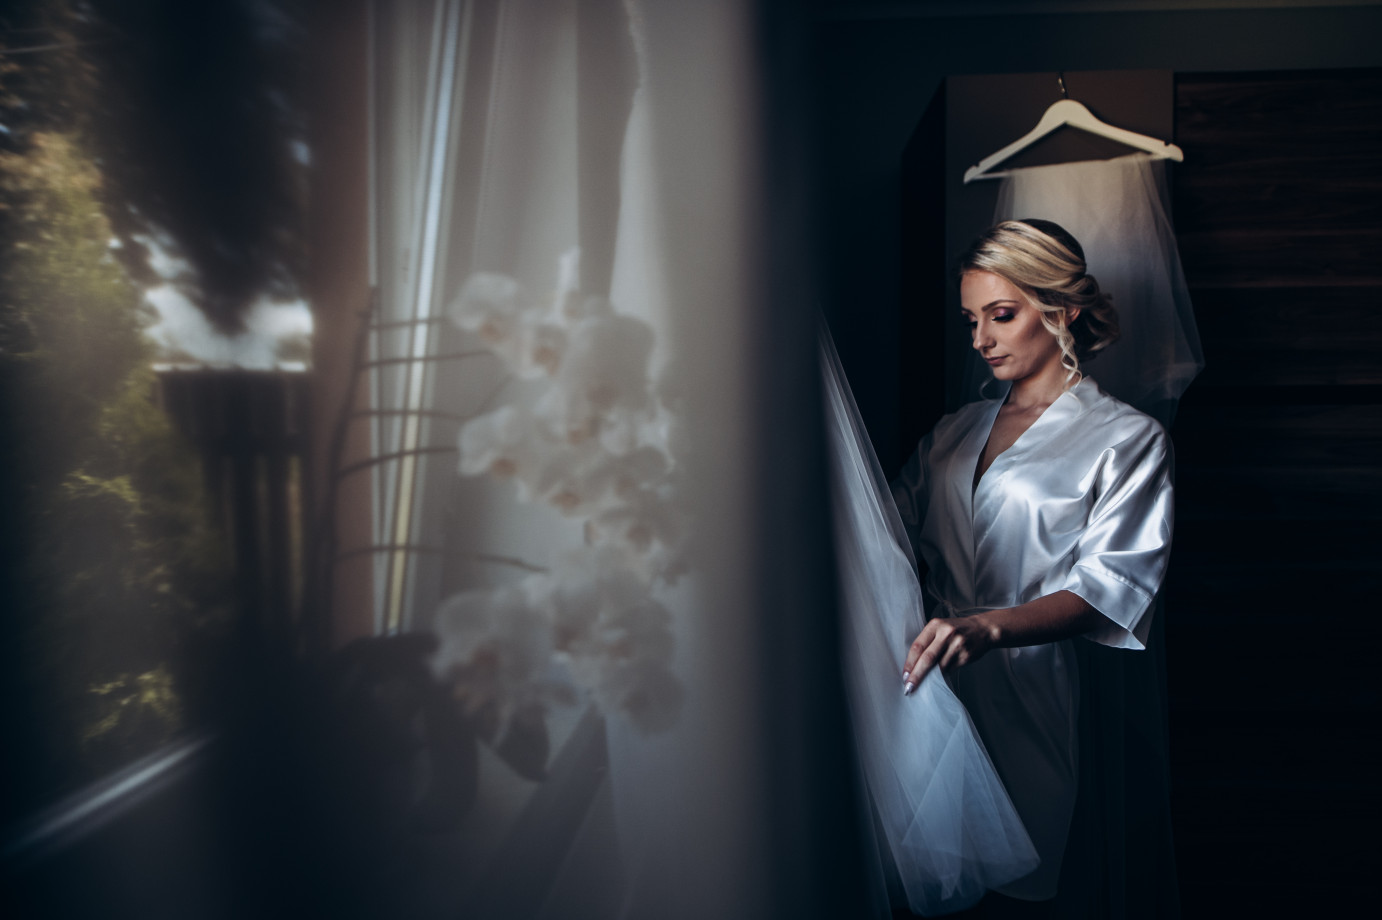 fotograf janow-lubelski robert-radzik-fotografia portfolio zdjecia slubne inspiracje wesele plener slubny sesja slubna